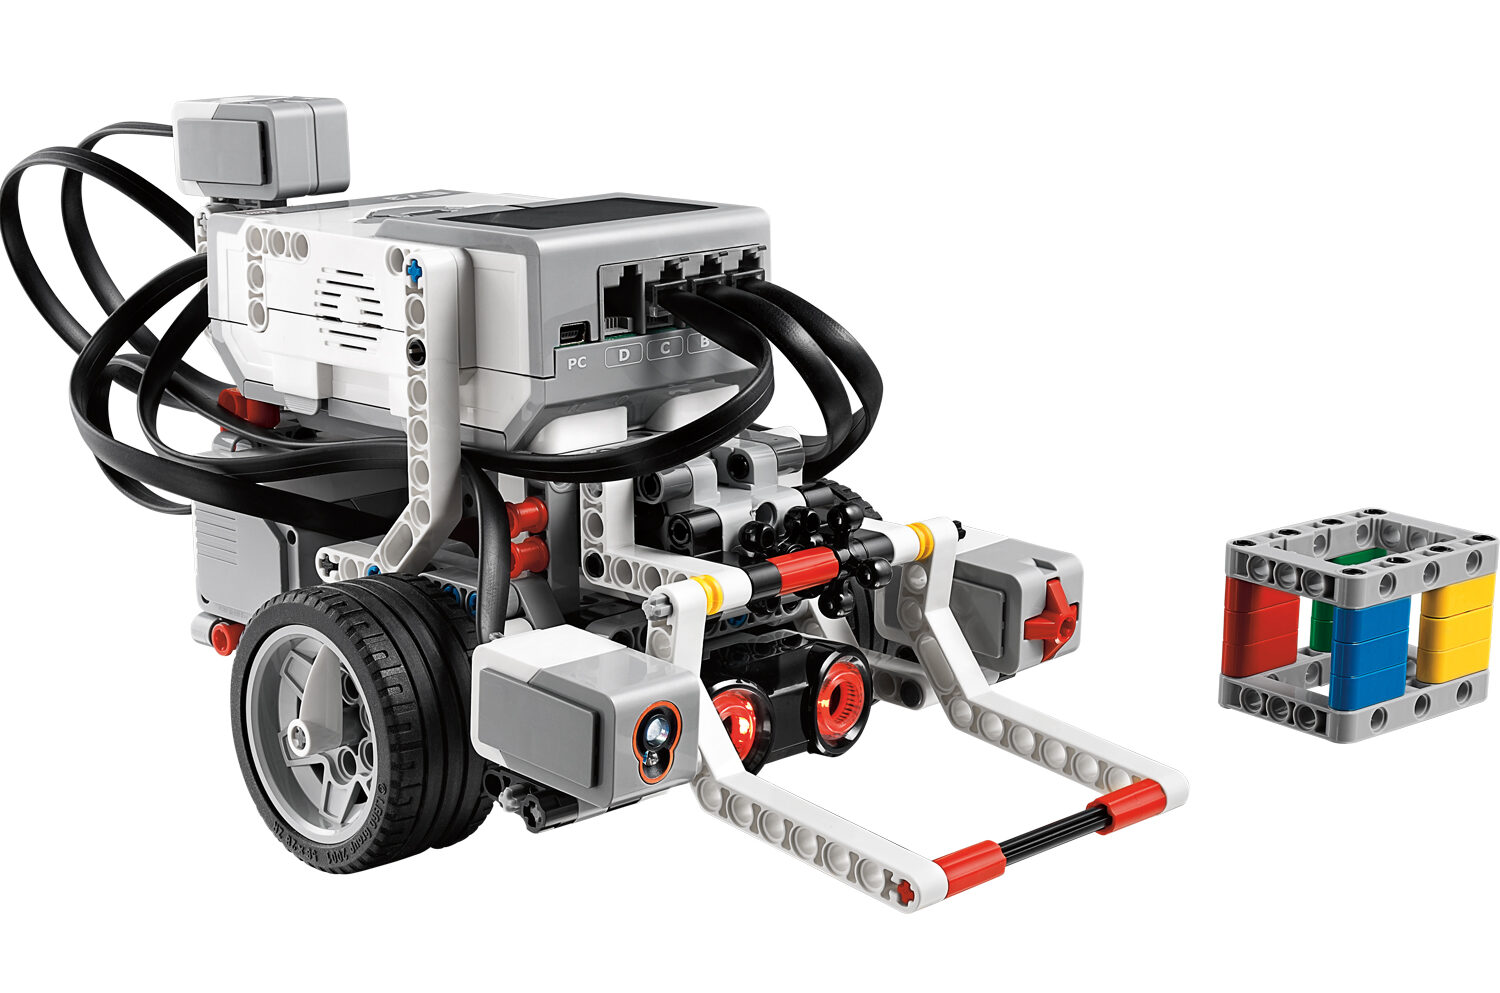 LEGO Education Mindstorms Robotics